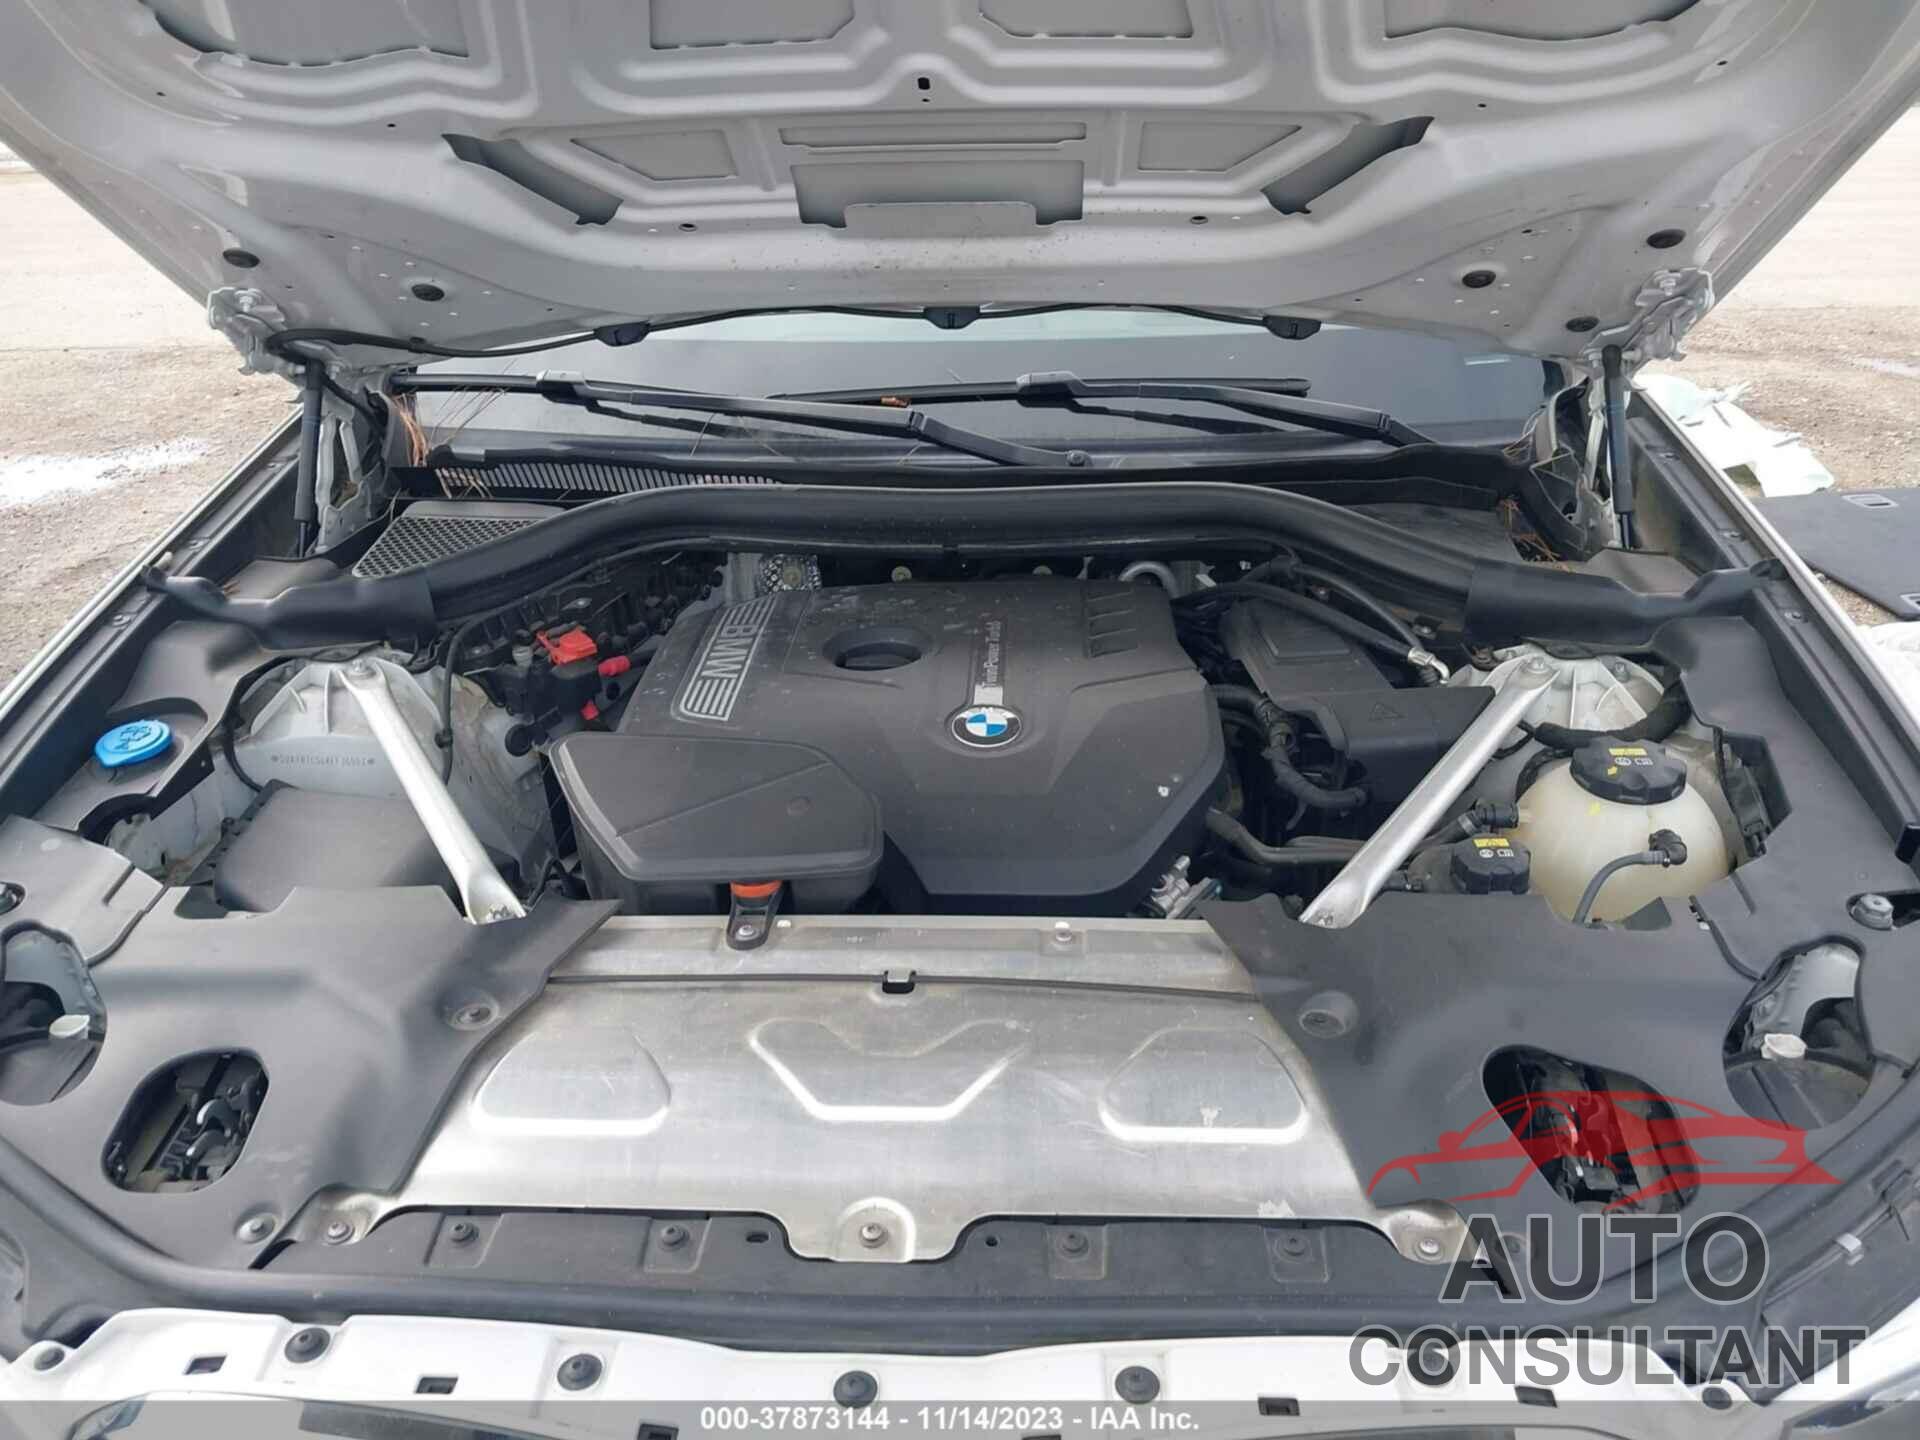 BMW X3 2019 - 5UXTR7C54KLF36553